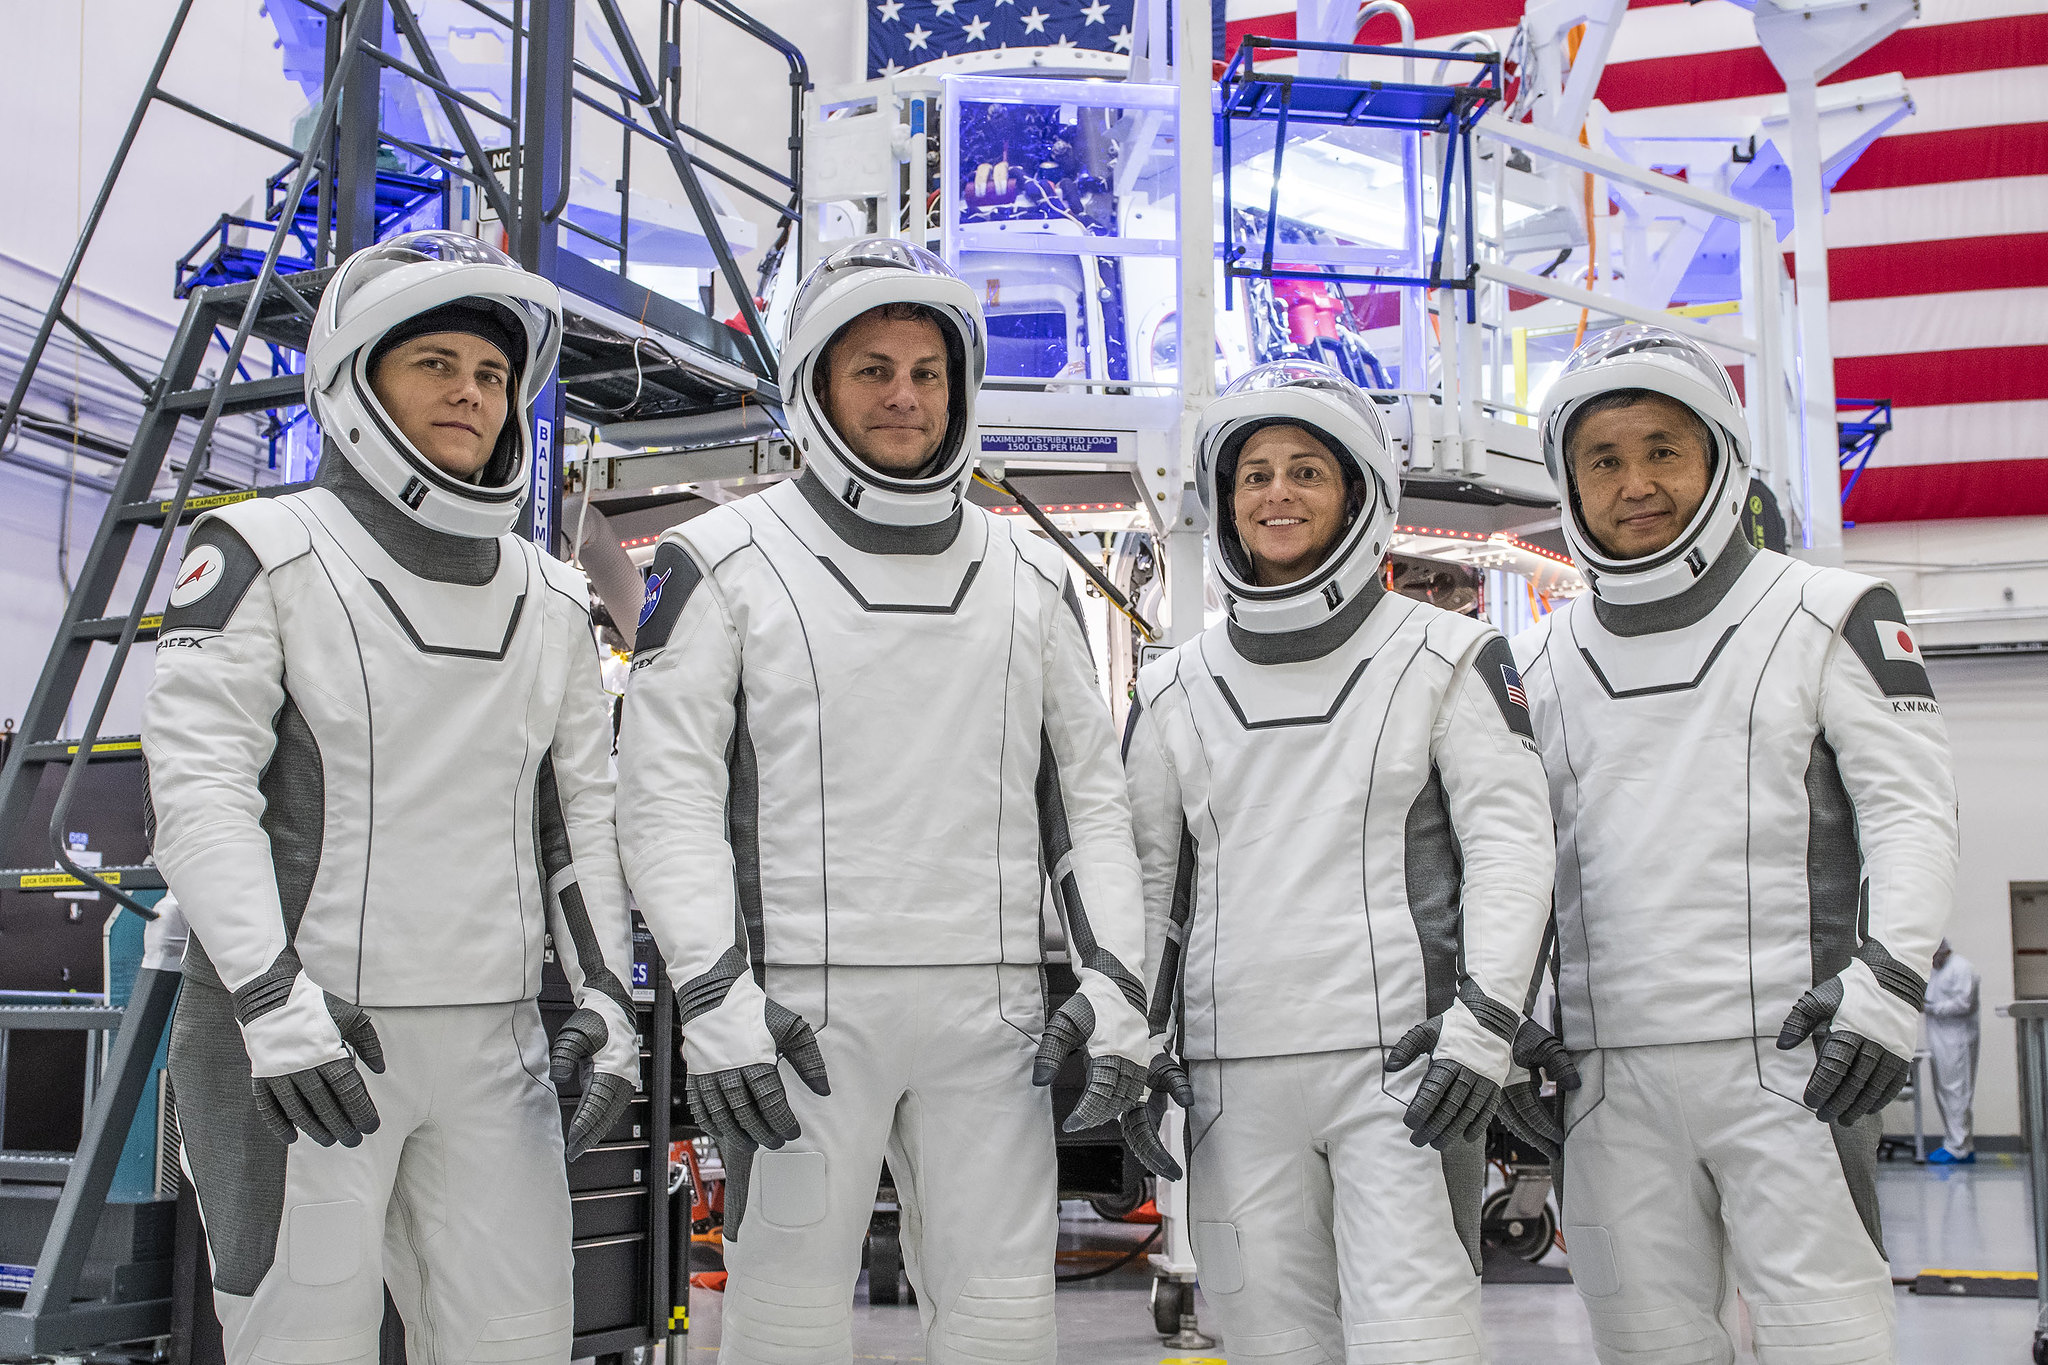 SpaceX Crew-5-Astronauten stehen in einer Reihe mit Raumanzügen vor nicht identifizierter Weltraumhardware und einer amerikanischen Flagge an der Wand